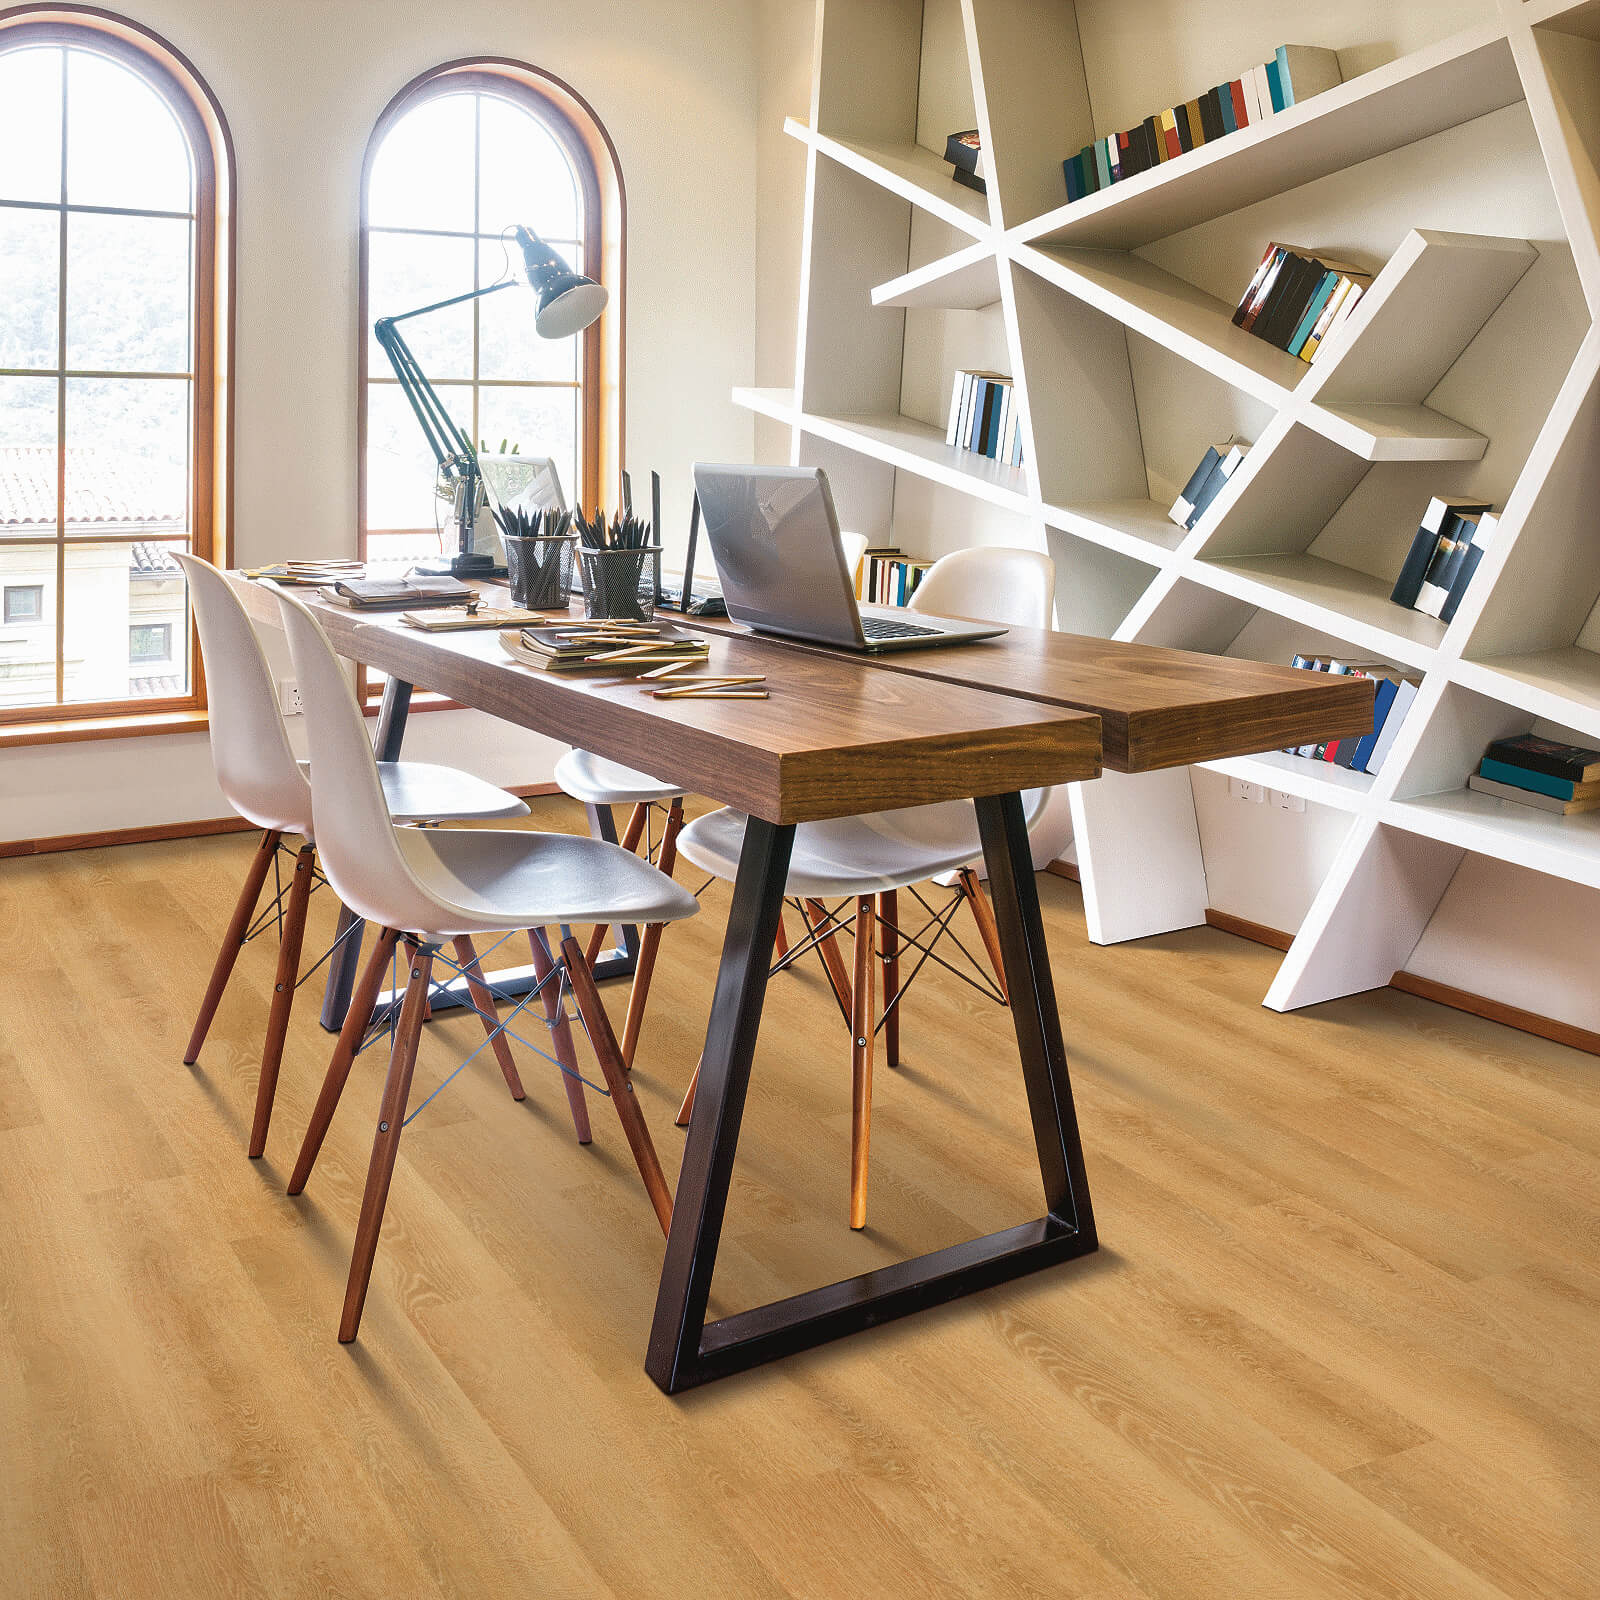 Vinyl flooring for study room | Star Flooring & Design